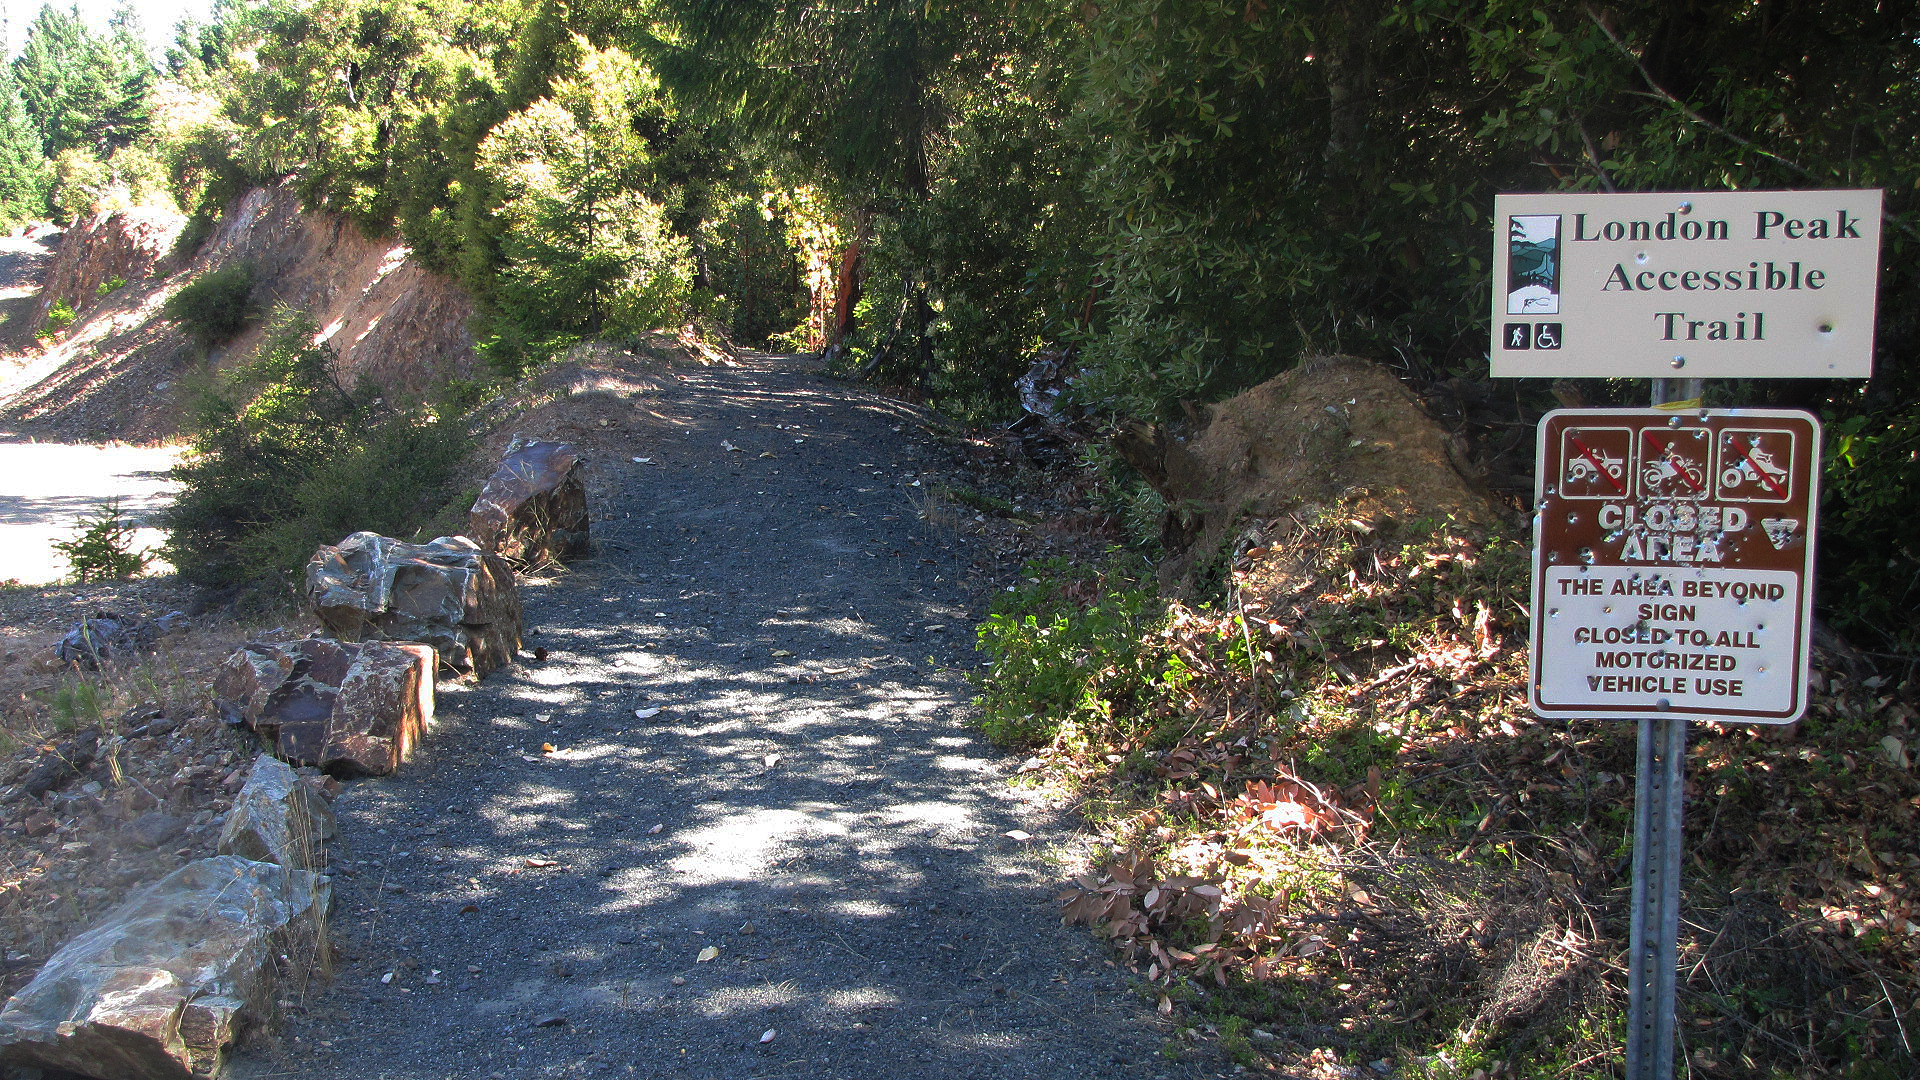 Accessible Trail of London Peak by Bureau of Land Managemnent Oregon and Washington